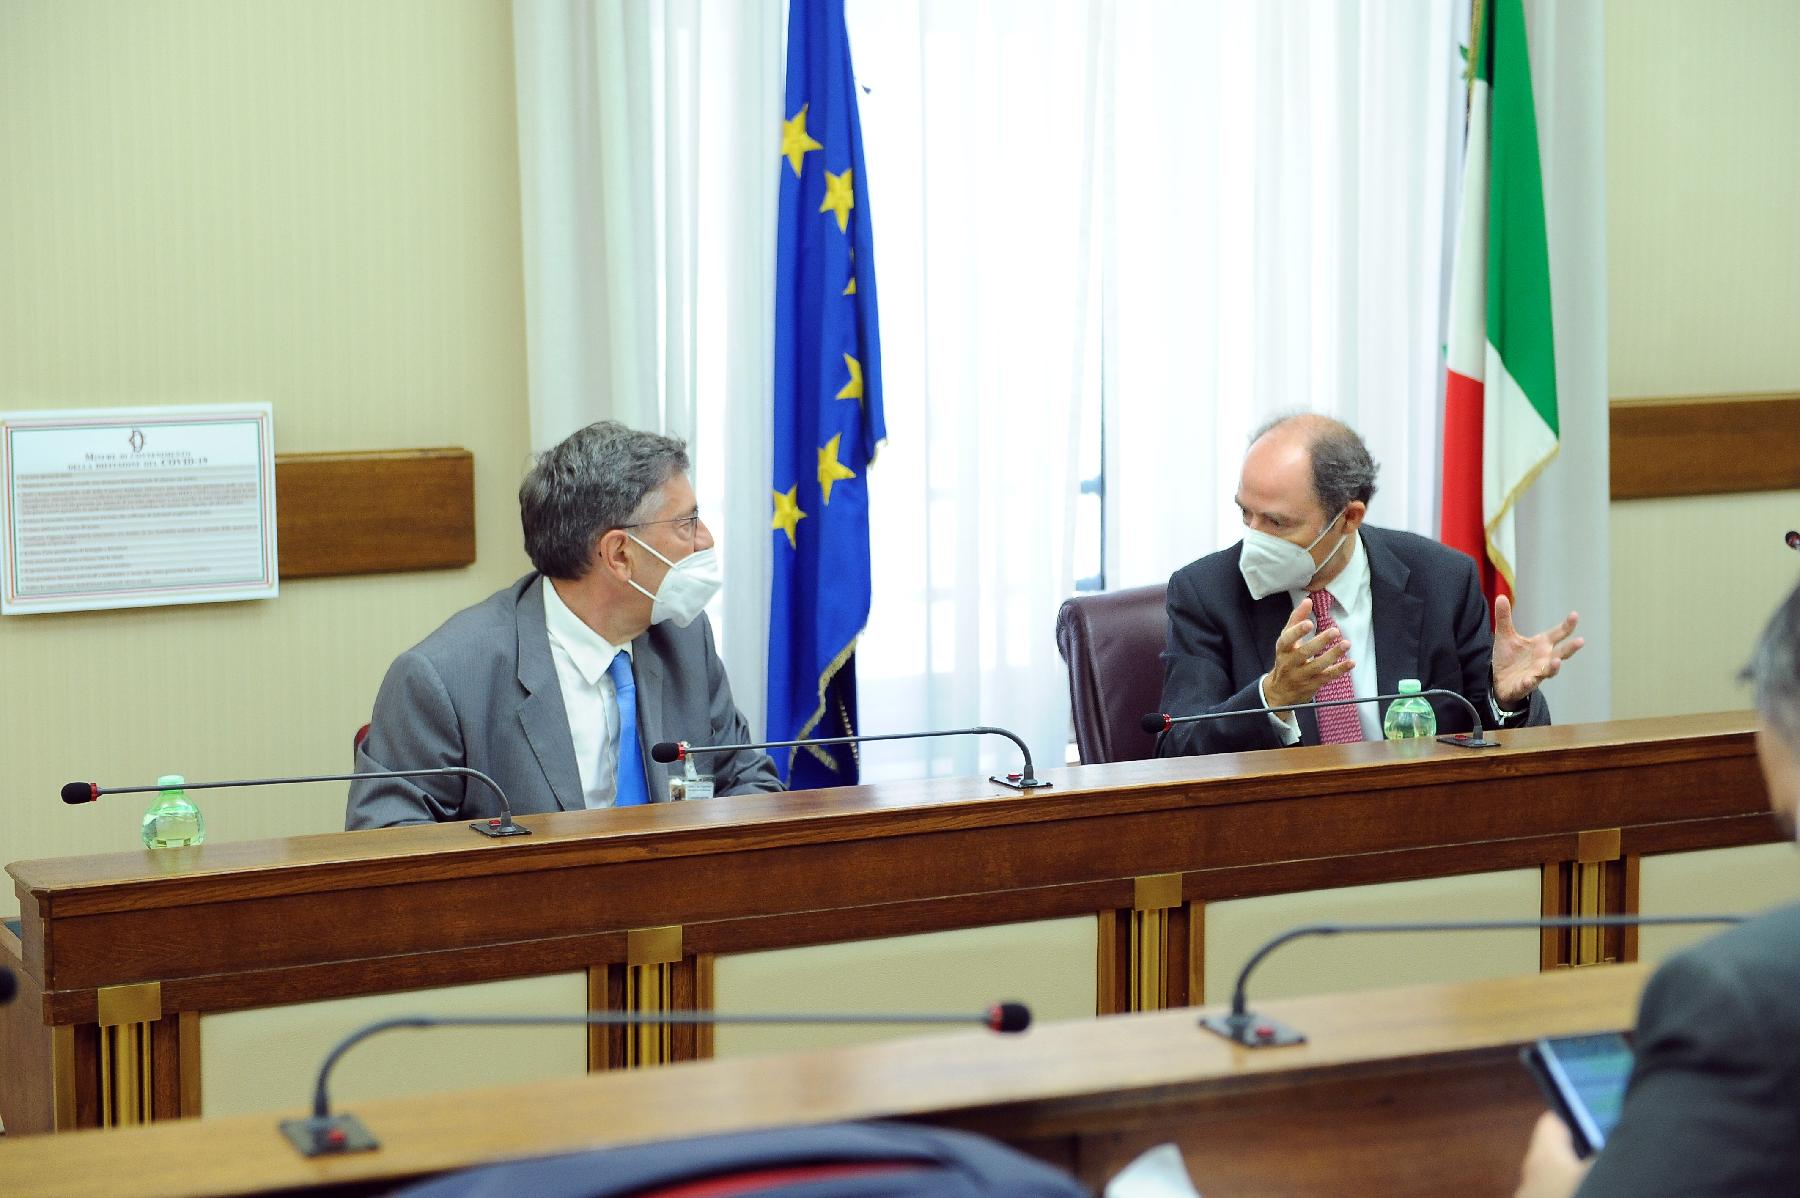 In Commissione d'inchiesta sulla morte di David Rossi, audizione del Procuratore della Repubblica di Siena, Salvatore Vitello.